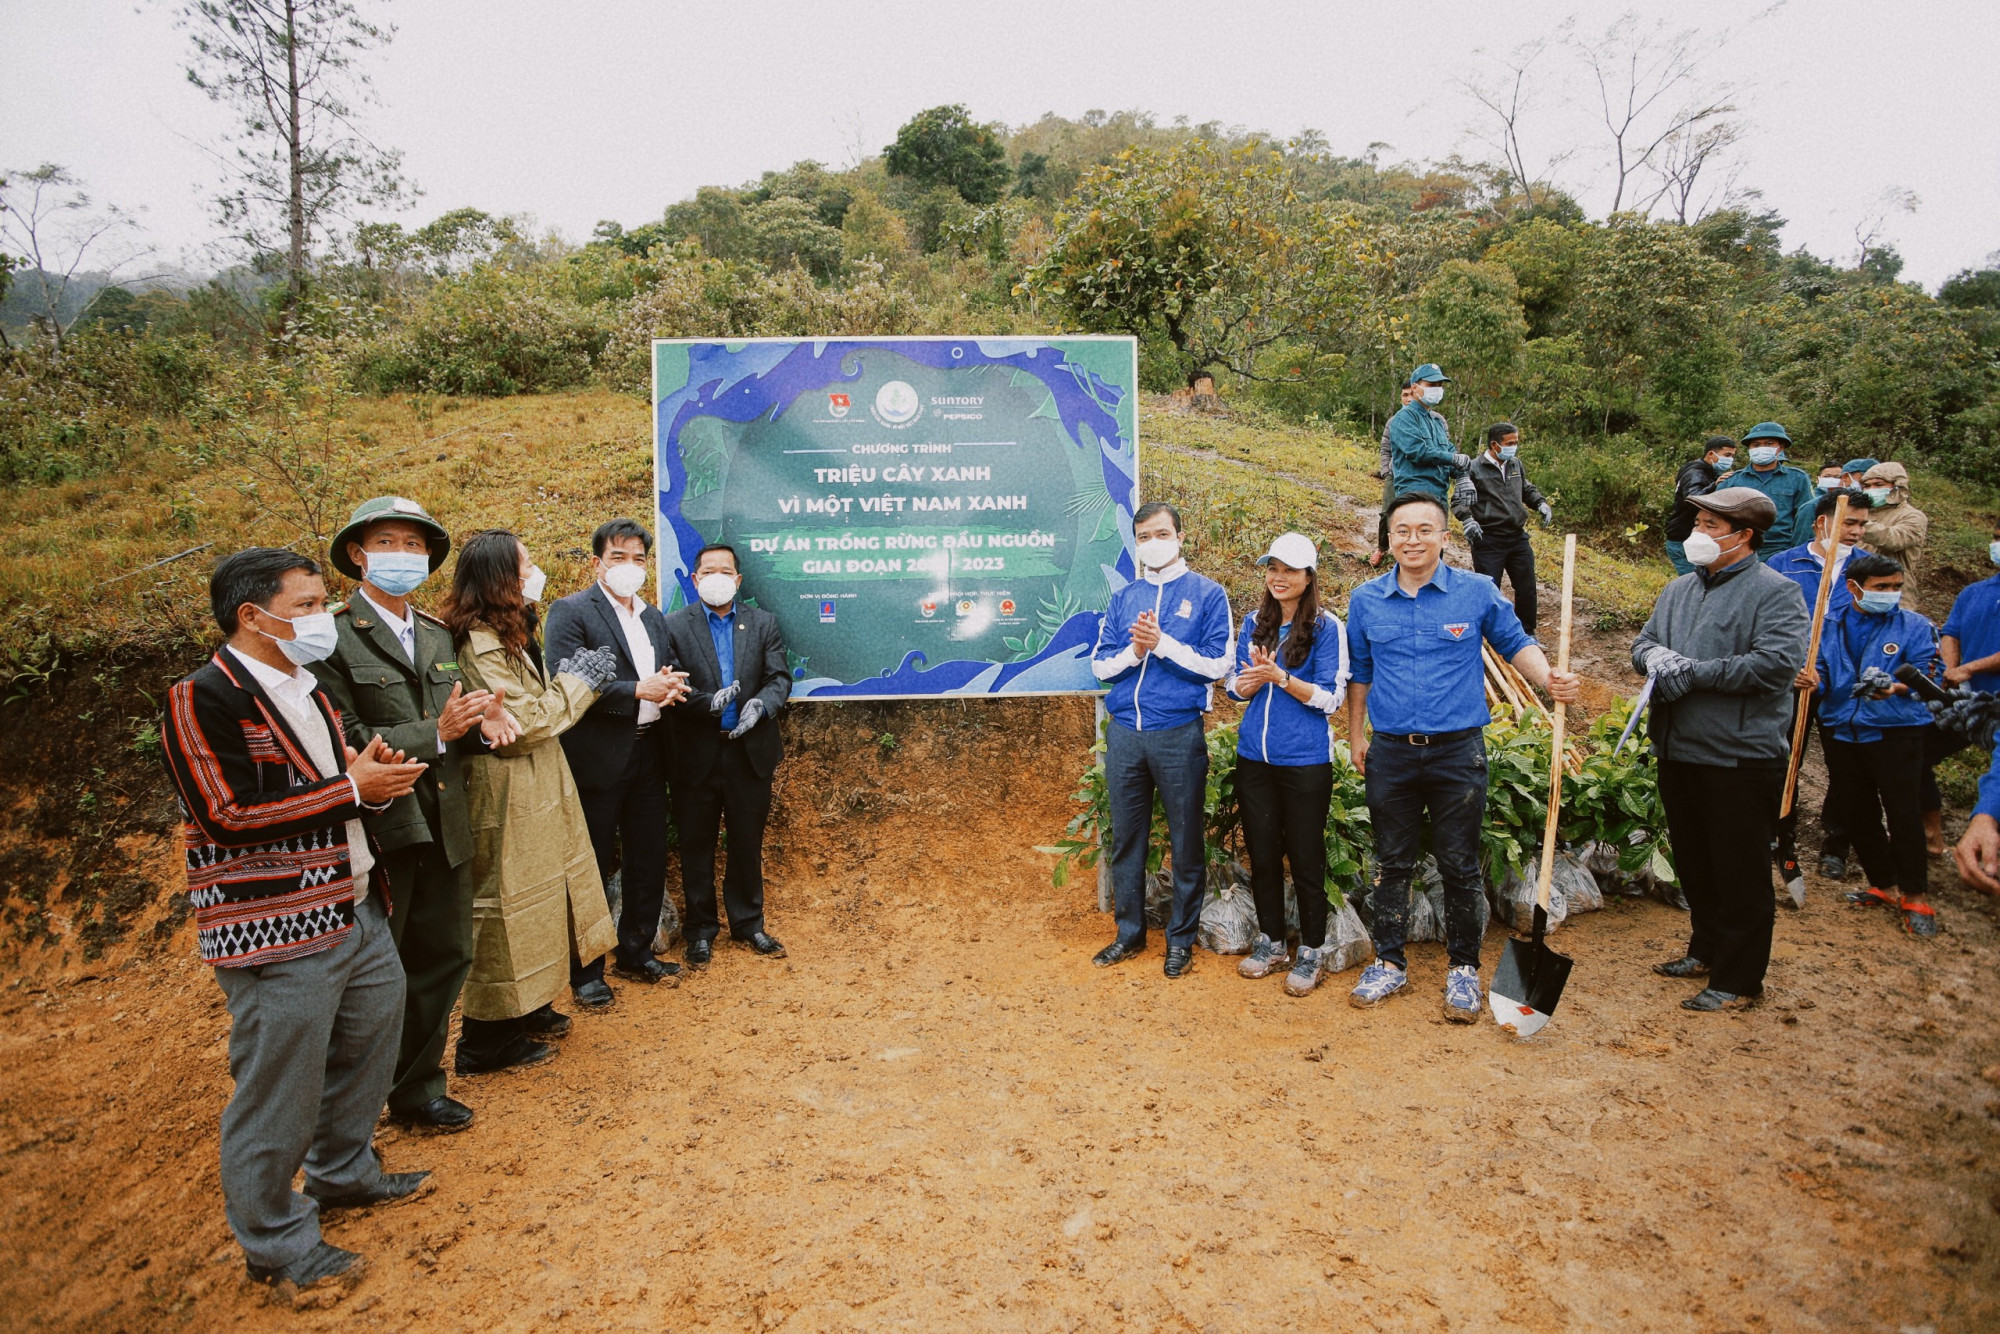  Các đại biểu đặt bảng lưu niệm hoạt động trồng rừng tại Huyện Tây Giang, Tỉnh Quảng Nam.